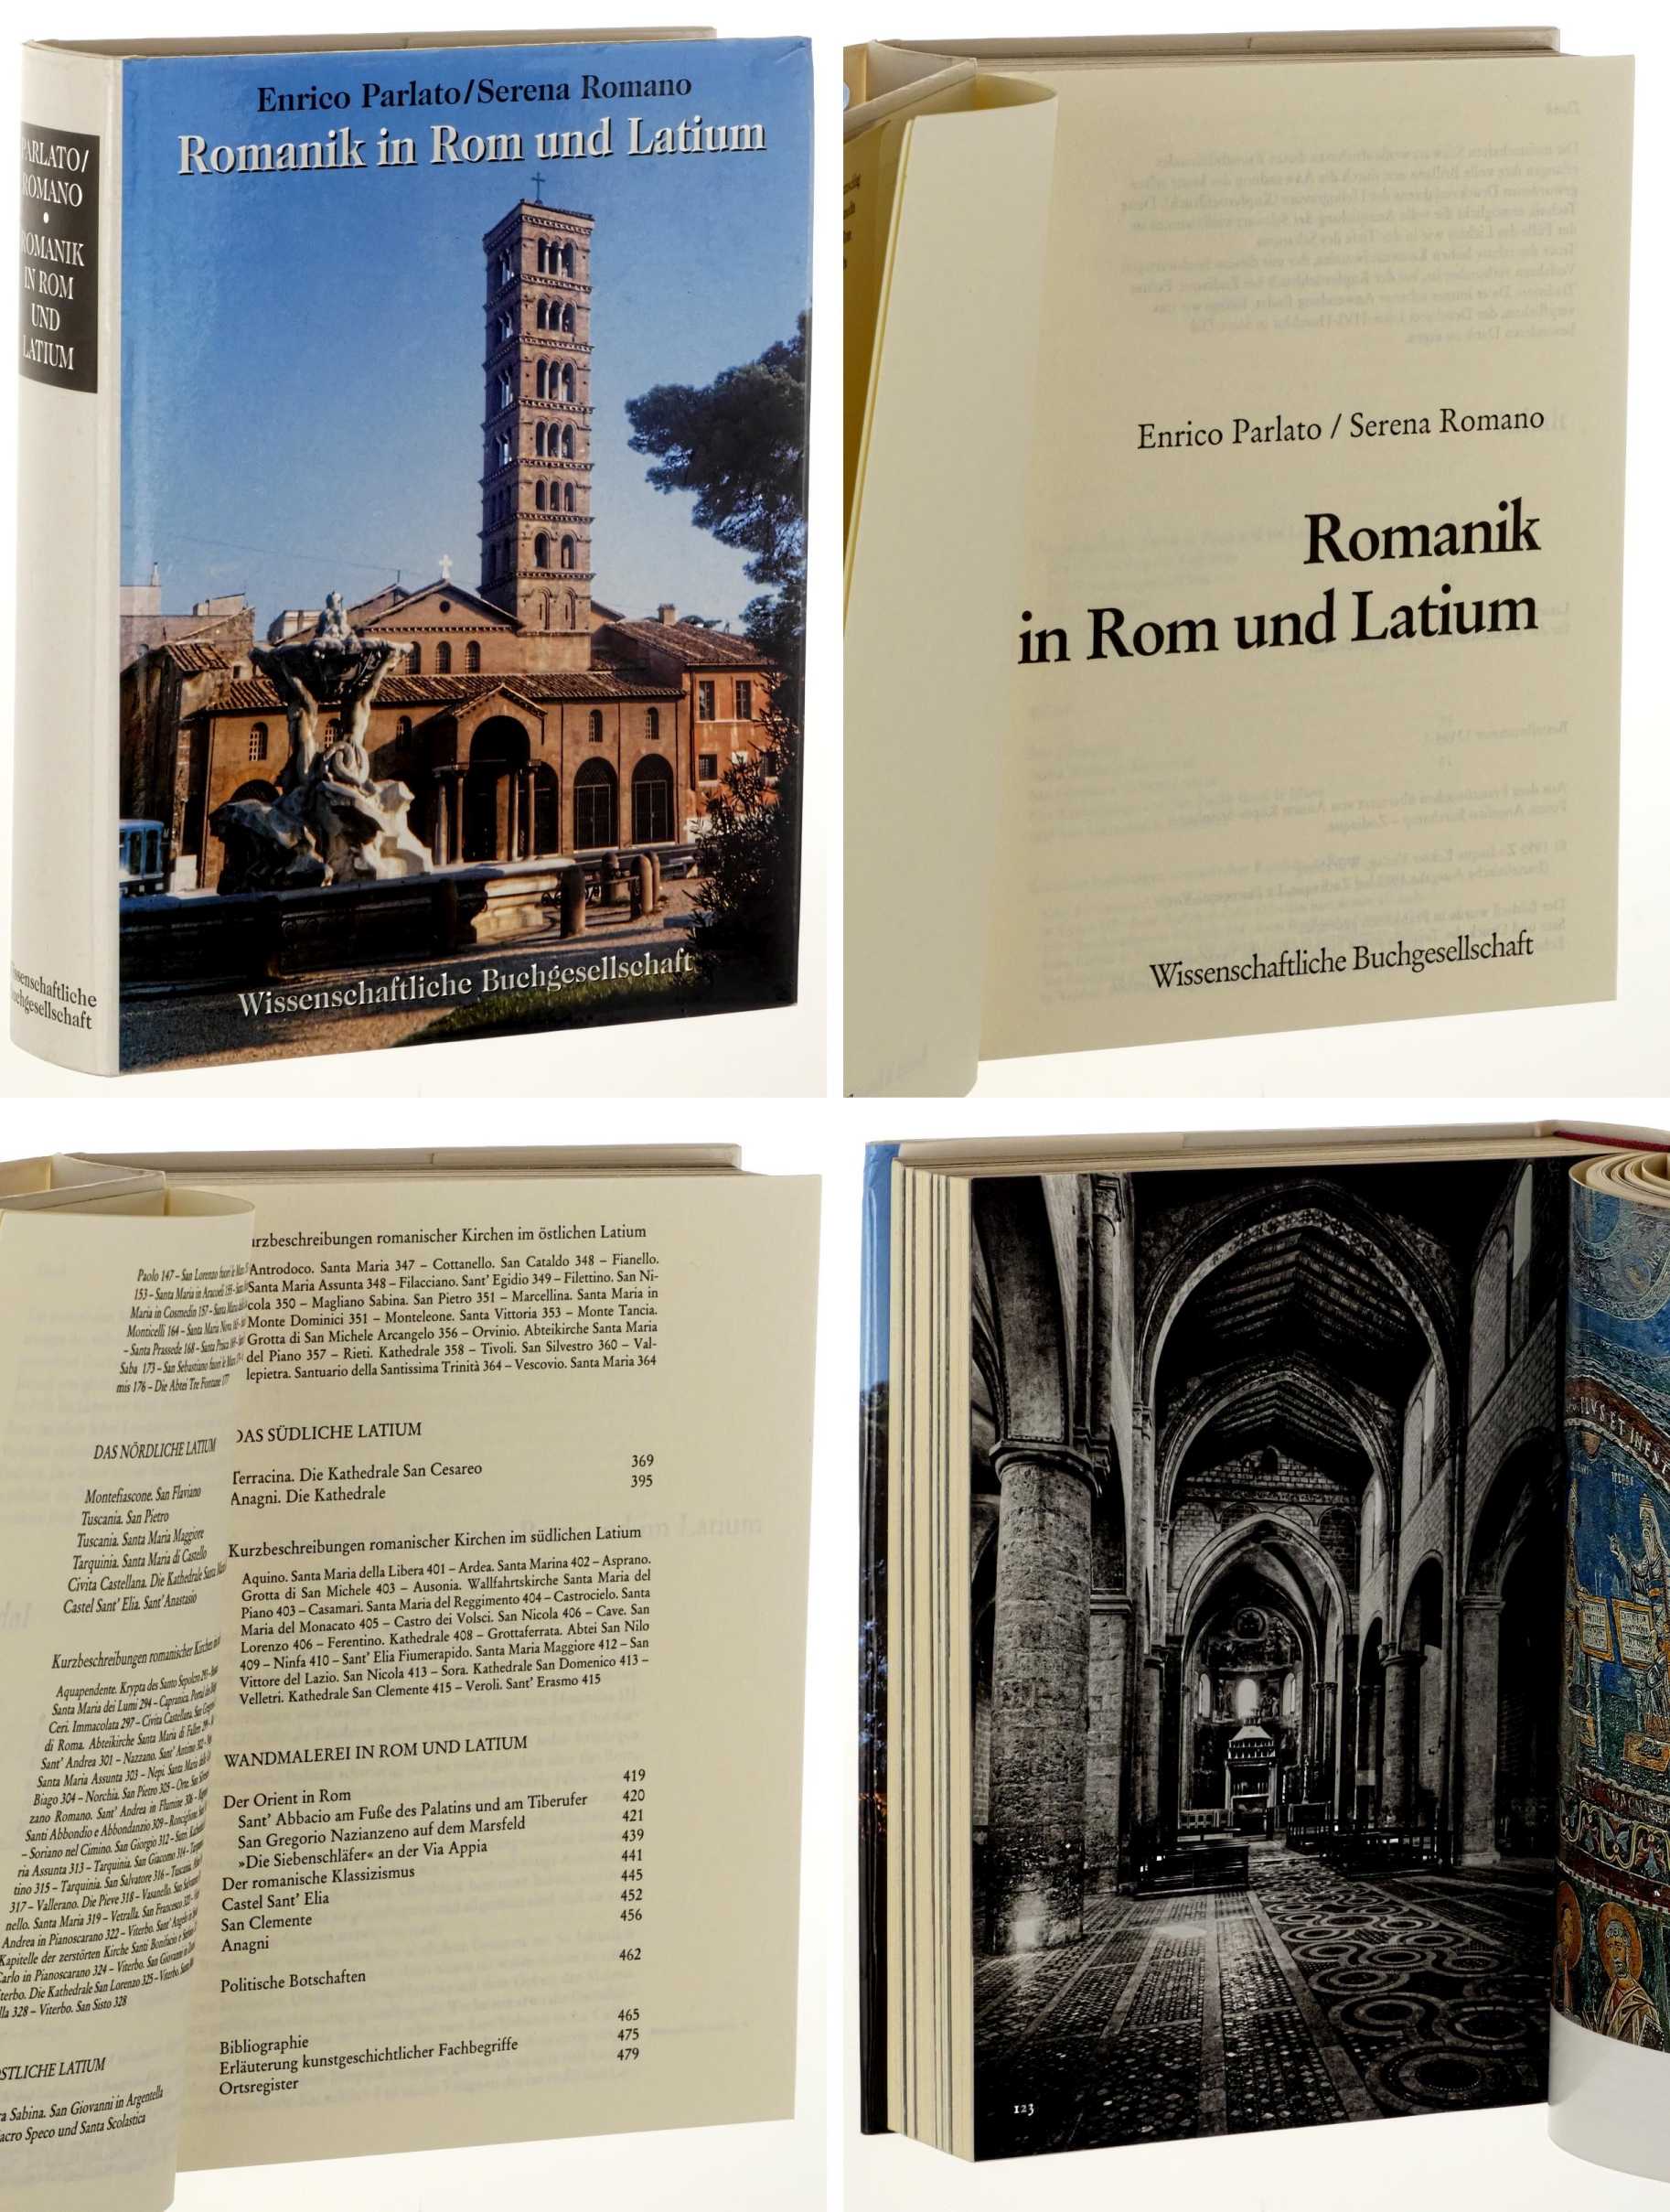 Parlato, Enrico/ Serena, Romano:  Romanik in Rom und Latium. 